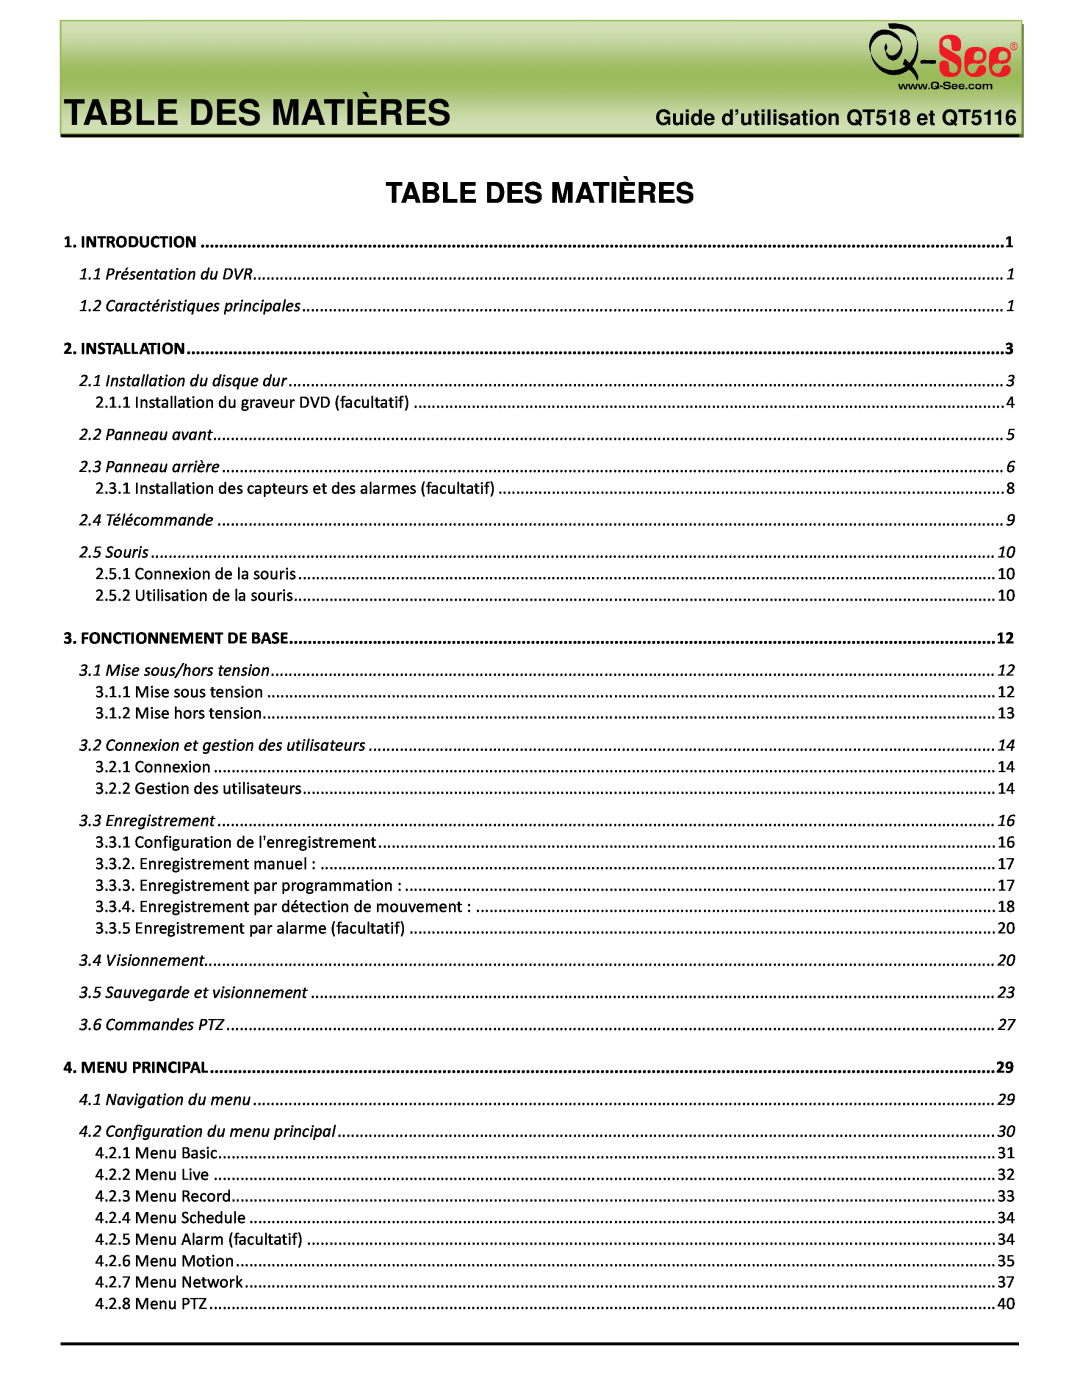 Q-See manual Table Des Matières, Guide d’utilisation QT518 et QT5116 